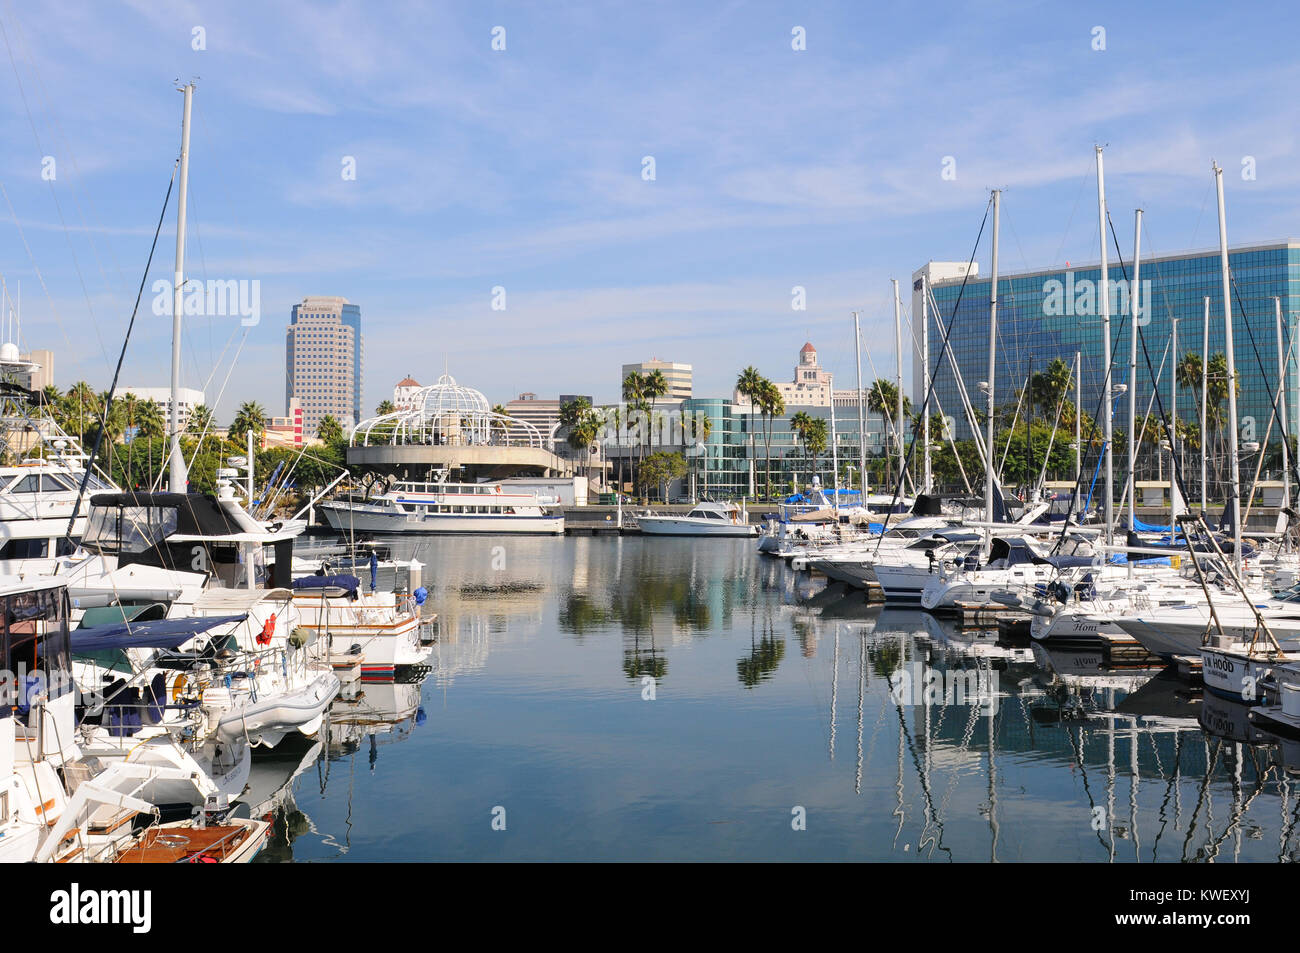 LONG BEACH, CA - 21. September 2012: Long Beach Marina und die Skyline der Stadt, Long Beach, Kalifornien. Long Beach ist ein beliebtes Reiseziel. Stockfoto